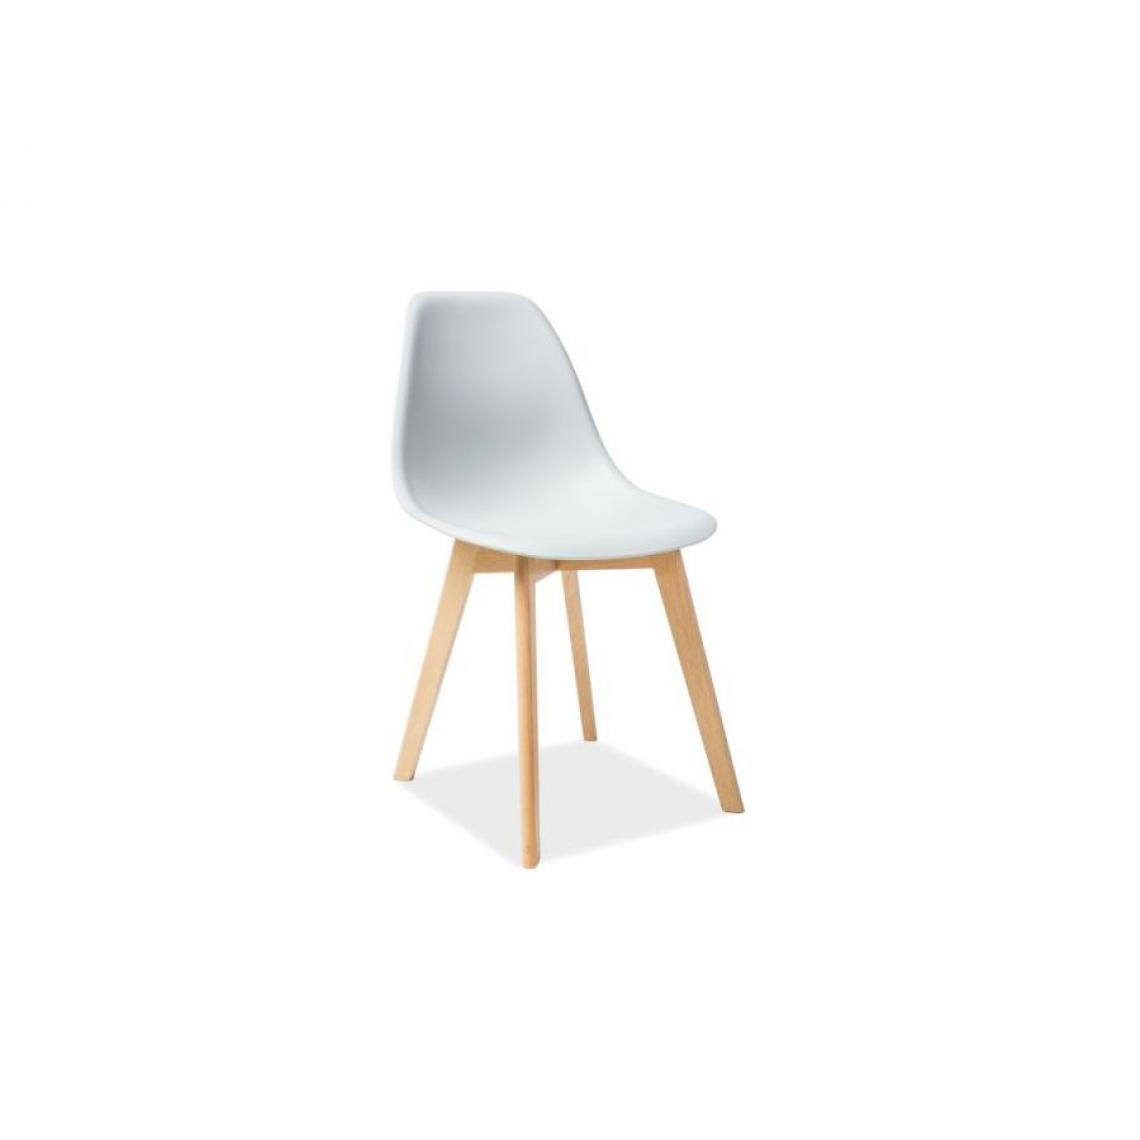 Hucoco - MORIT | Chaise en plastique style scandinave salle à manger salon | 85x46x38 cm | Dossier et assise en polypropylène | Base en bois - Gris clair - Chaises